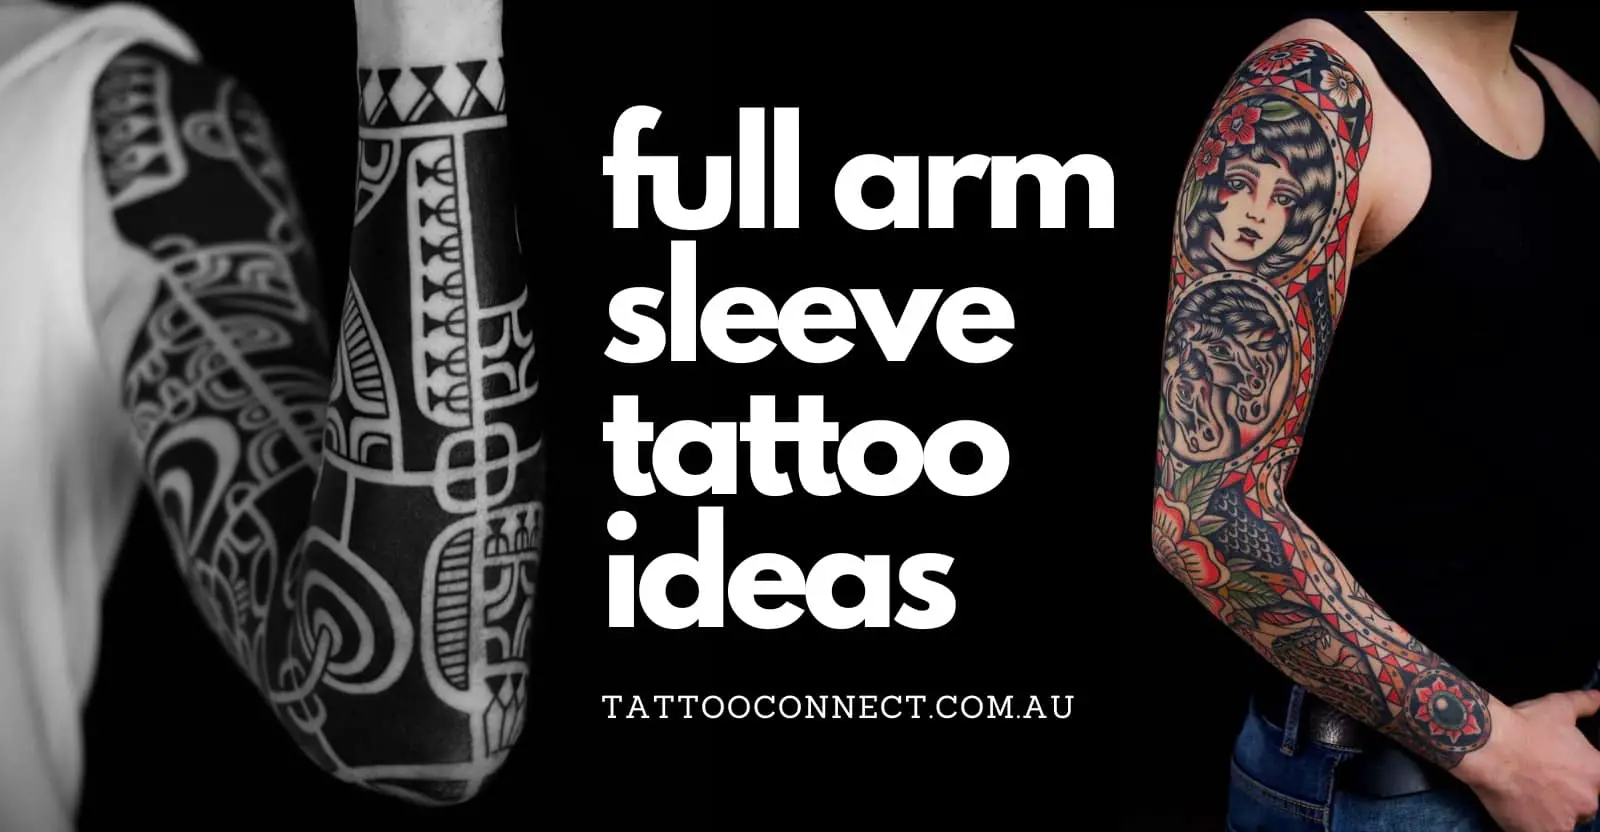 80 Feminine Full Sleeve Tattoos